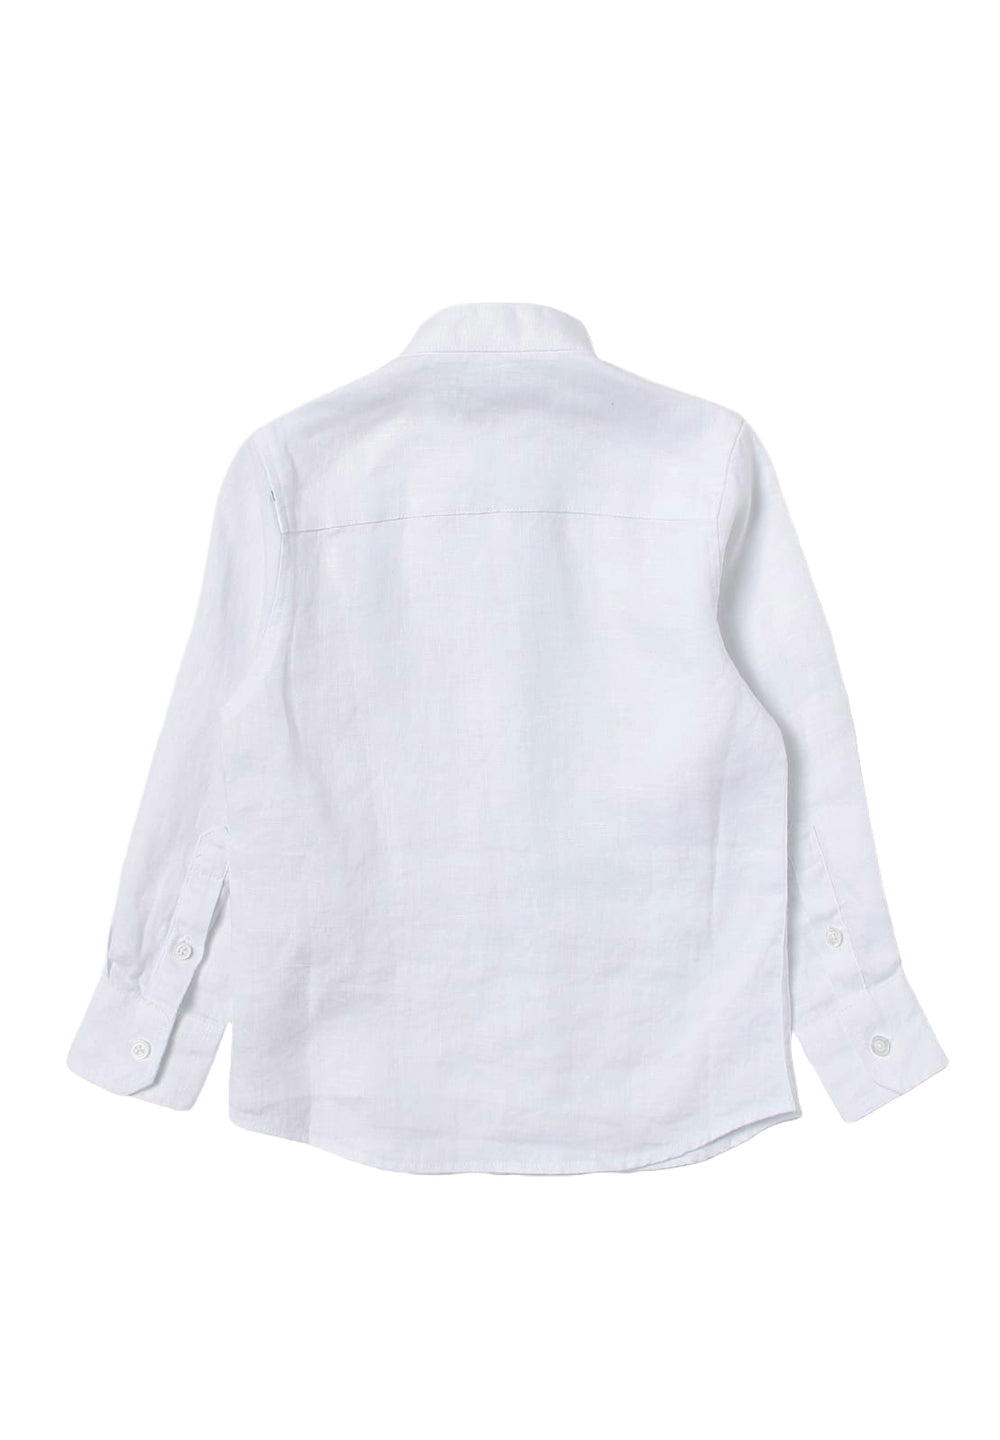 Camicia bianca per bambino - Primamoda kids